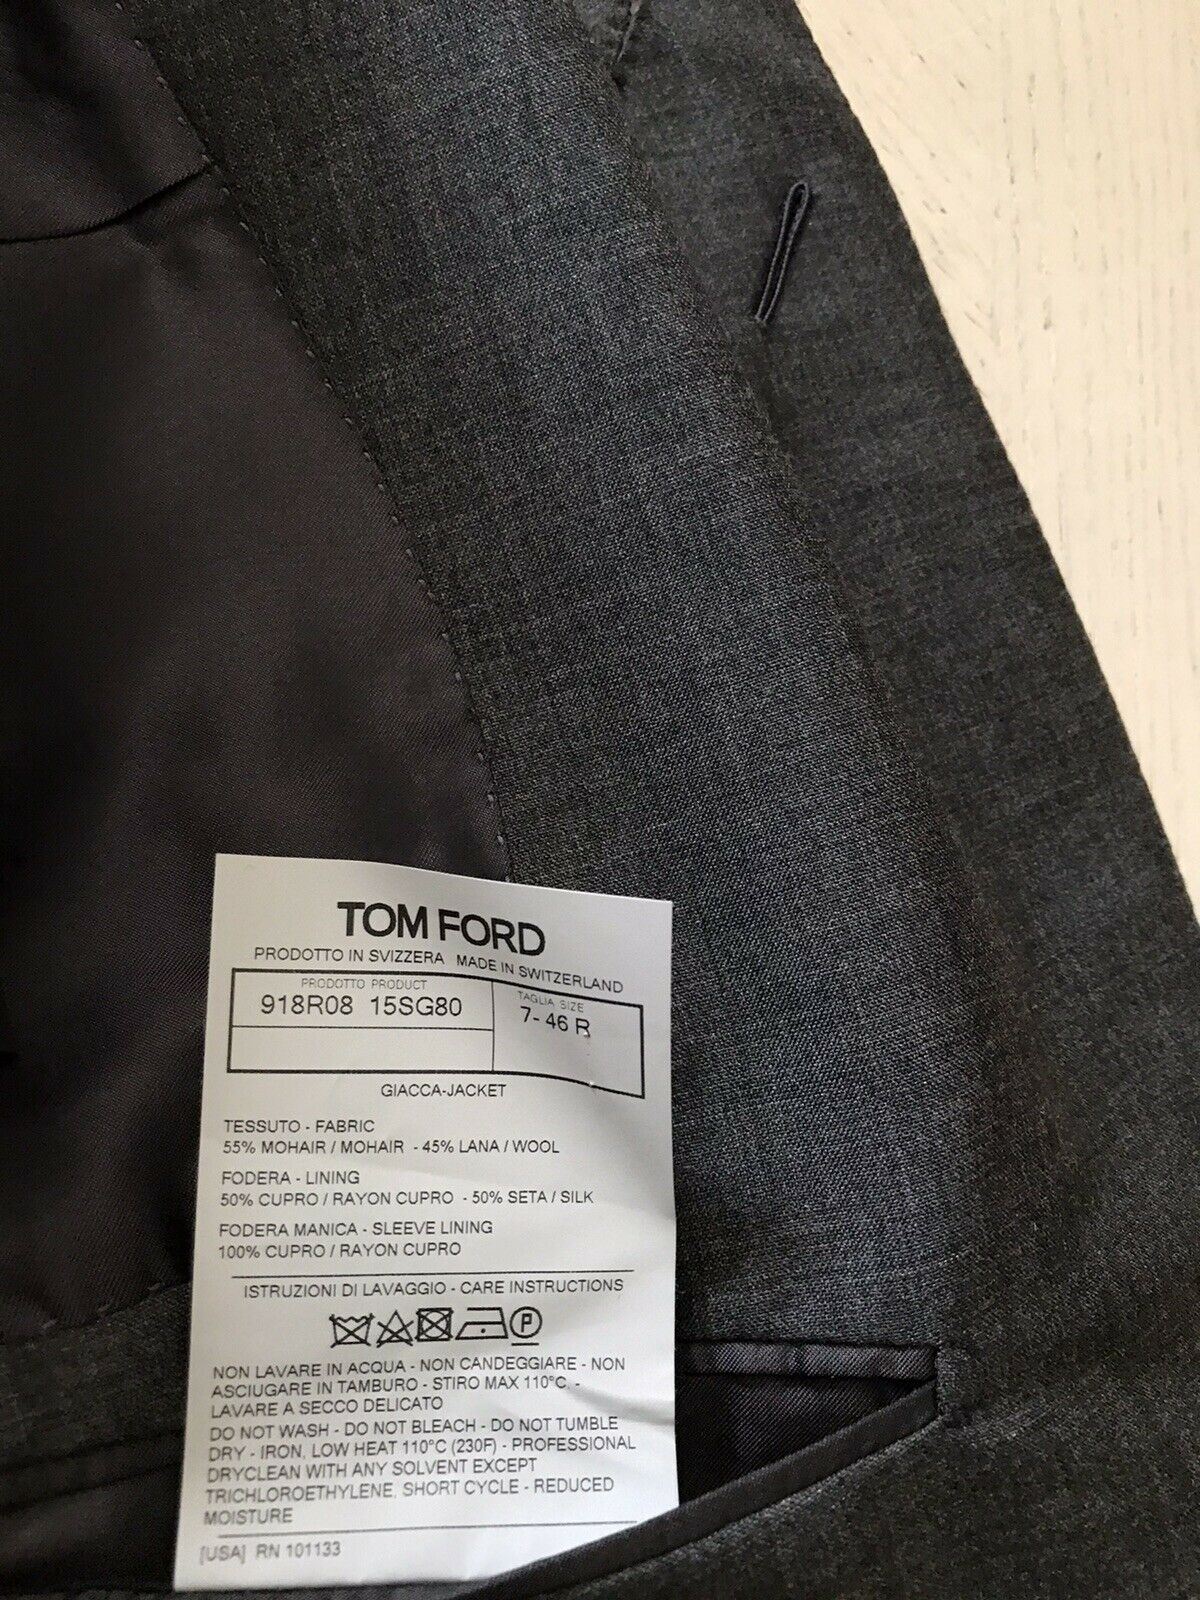 NWT $3970 TOM FORD Мужская куртка Giacca Блейзер DK Серый 36 США/46 ЕС Швейцария